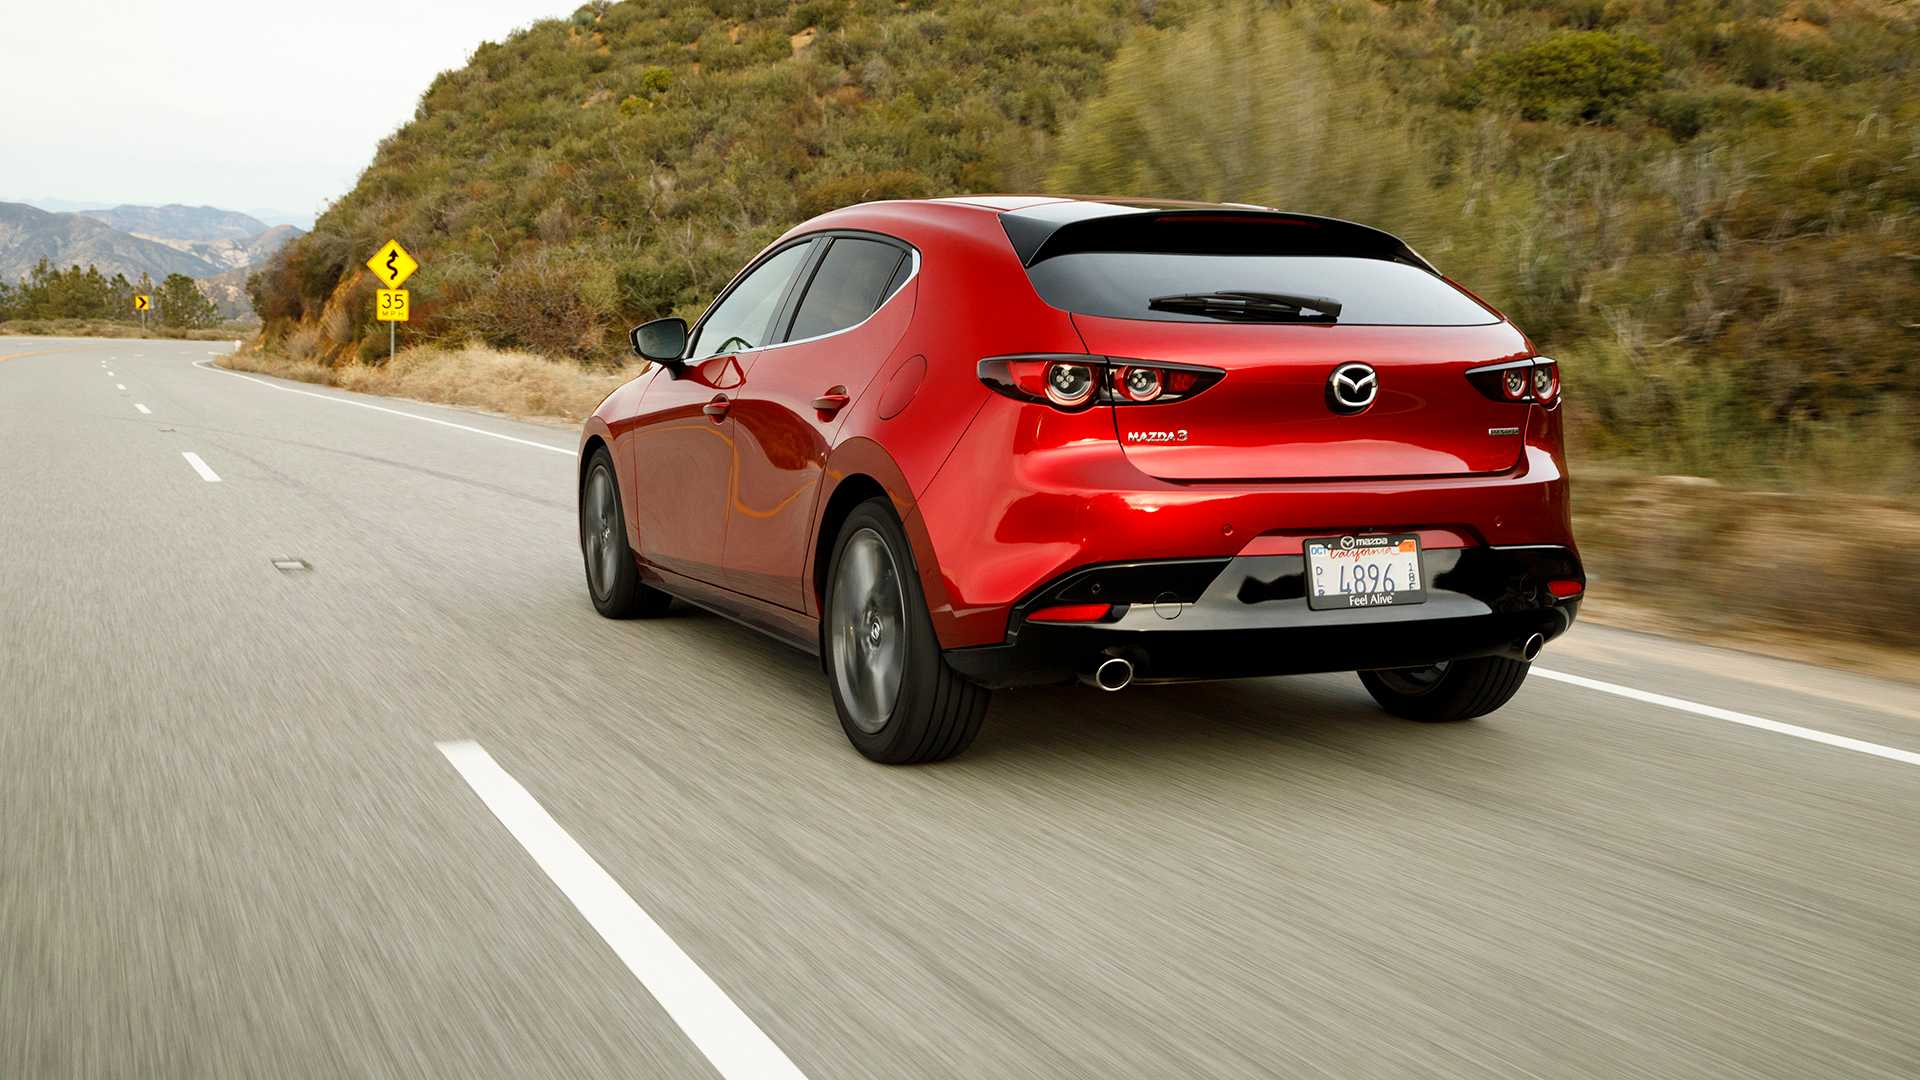 Triệu hồi Mazda3 2019 vì nguy cơ rơi bánh lúc đang chạy